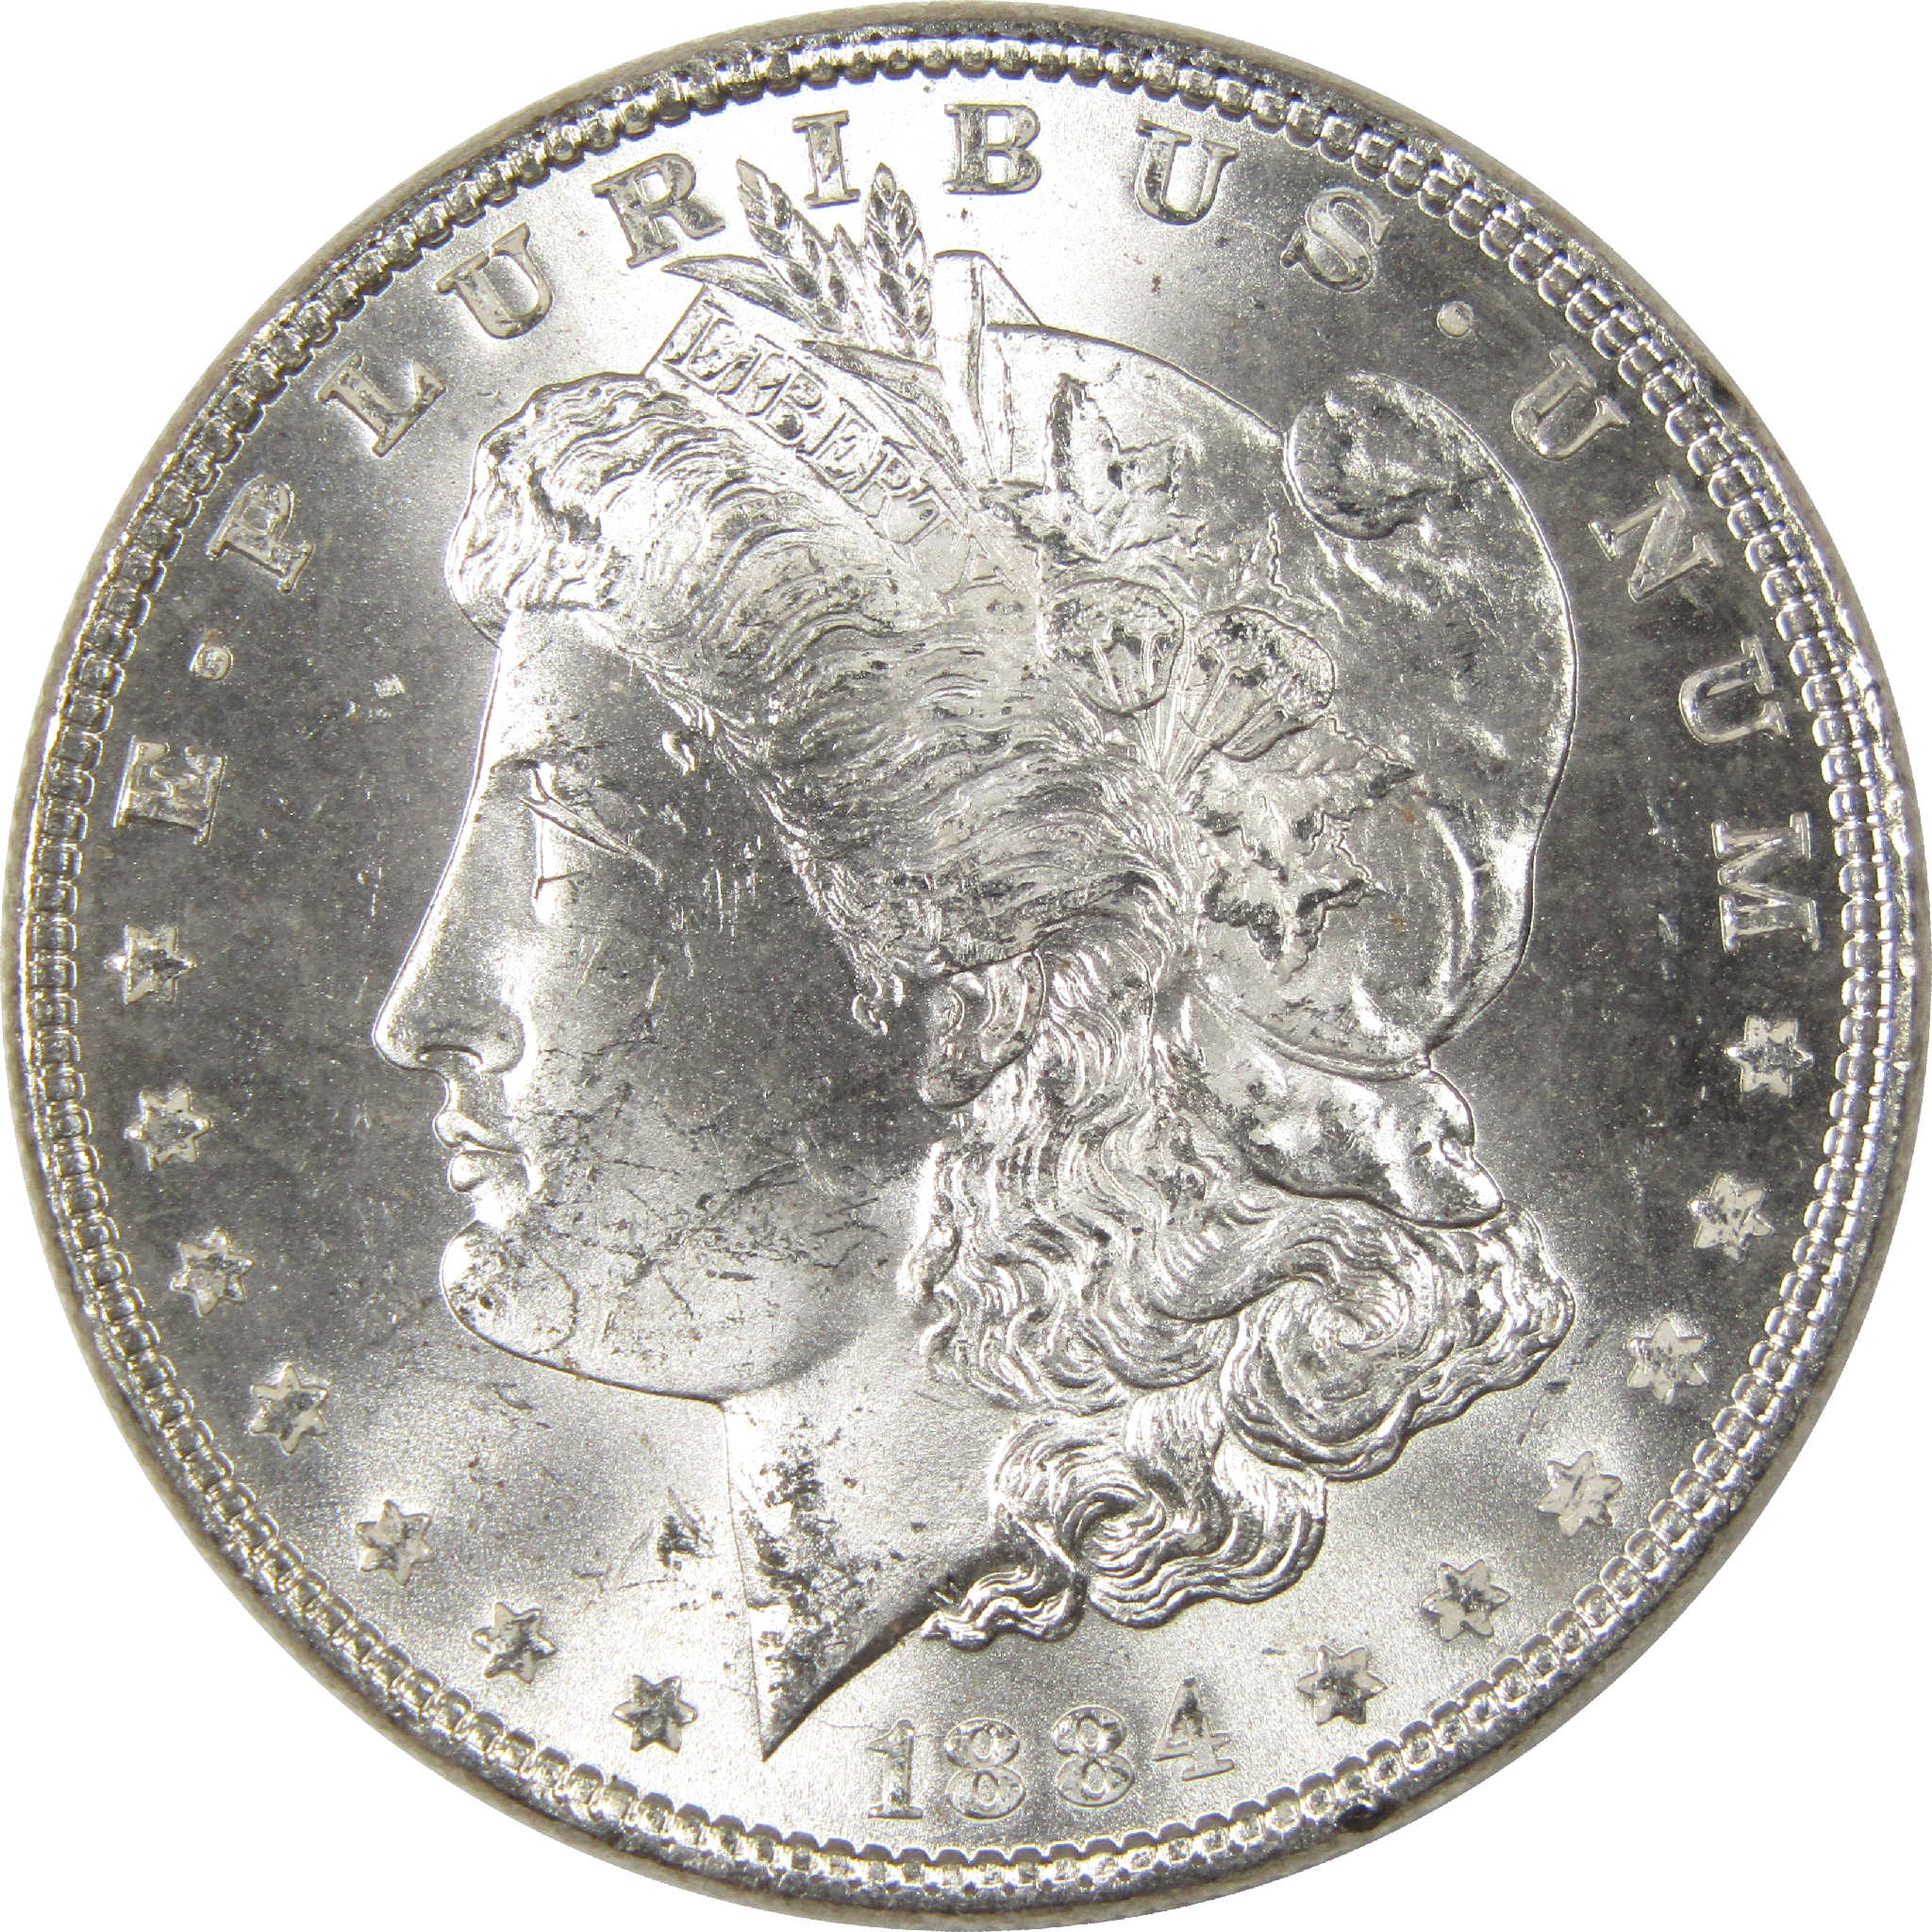 1884 Morgan Dollar Uncirculated Silver $1 Coin - Morgan coin - Morgan silver dollar - Morgan silver dollar for sale - Profile Coins &amp; Collectibles